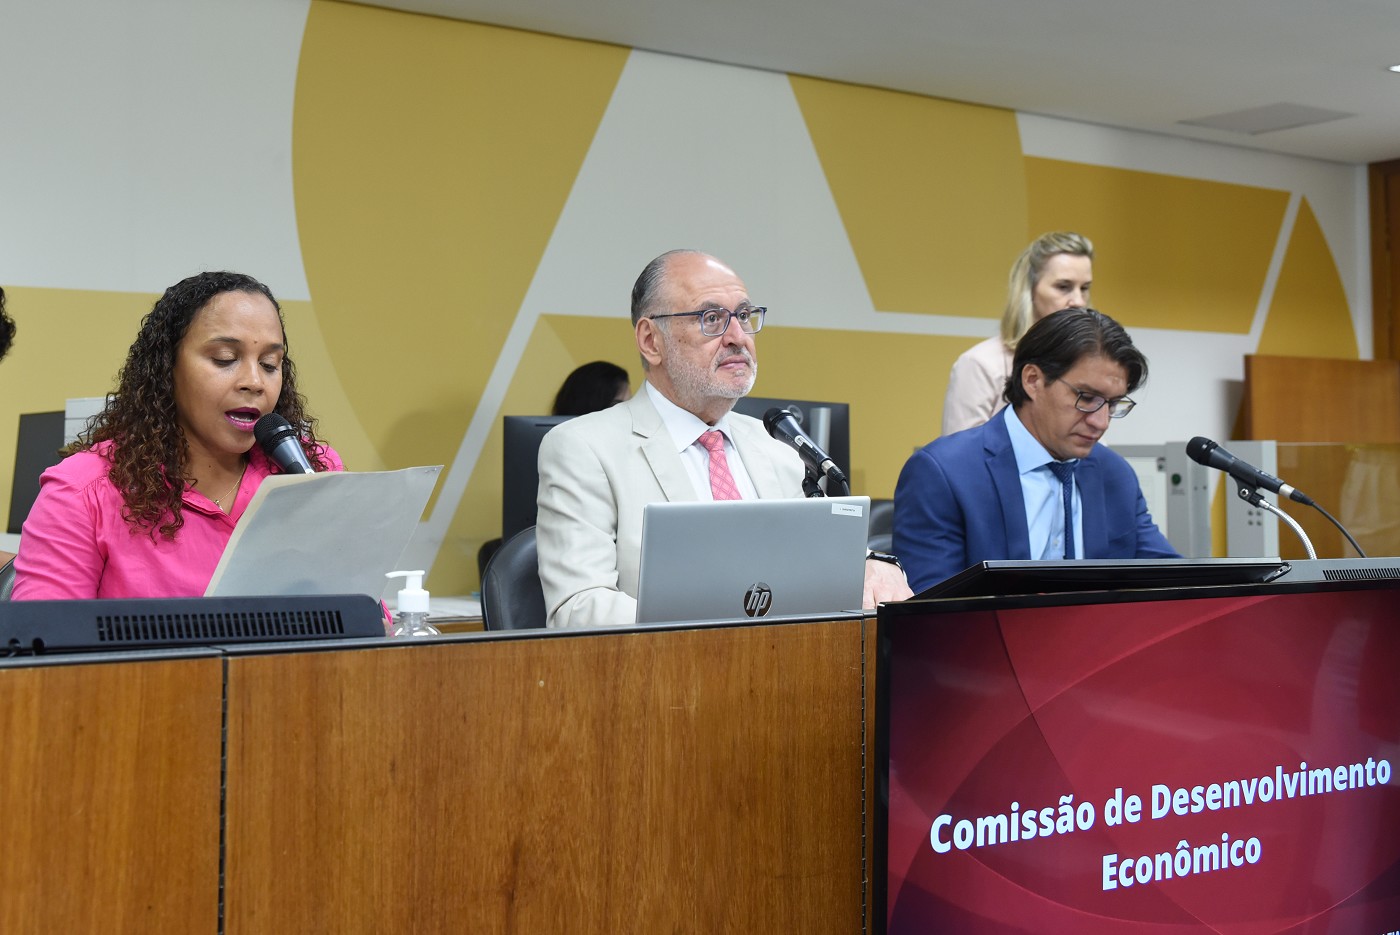 Comissão de Desenvolvimento Econômico - análise de proposições